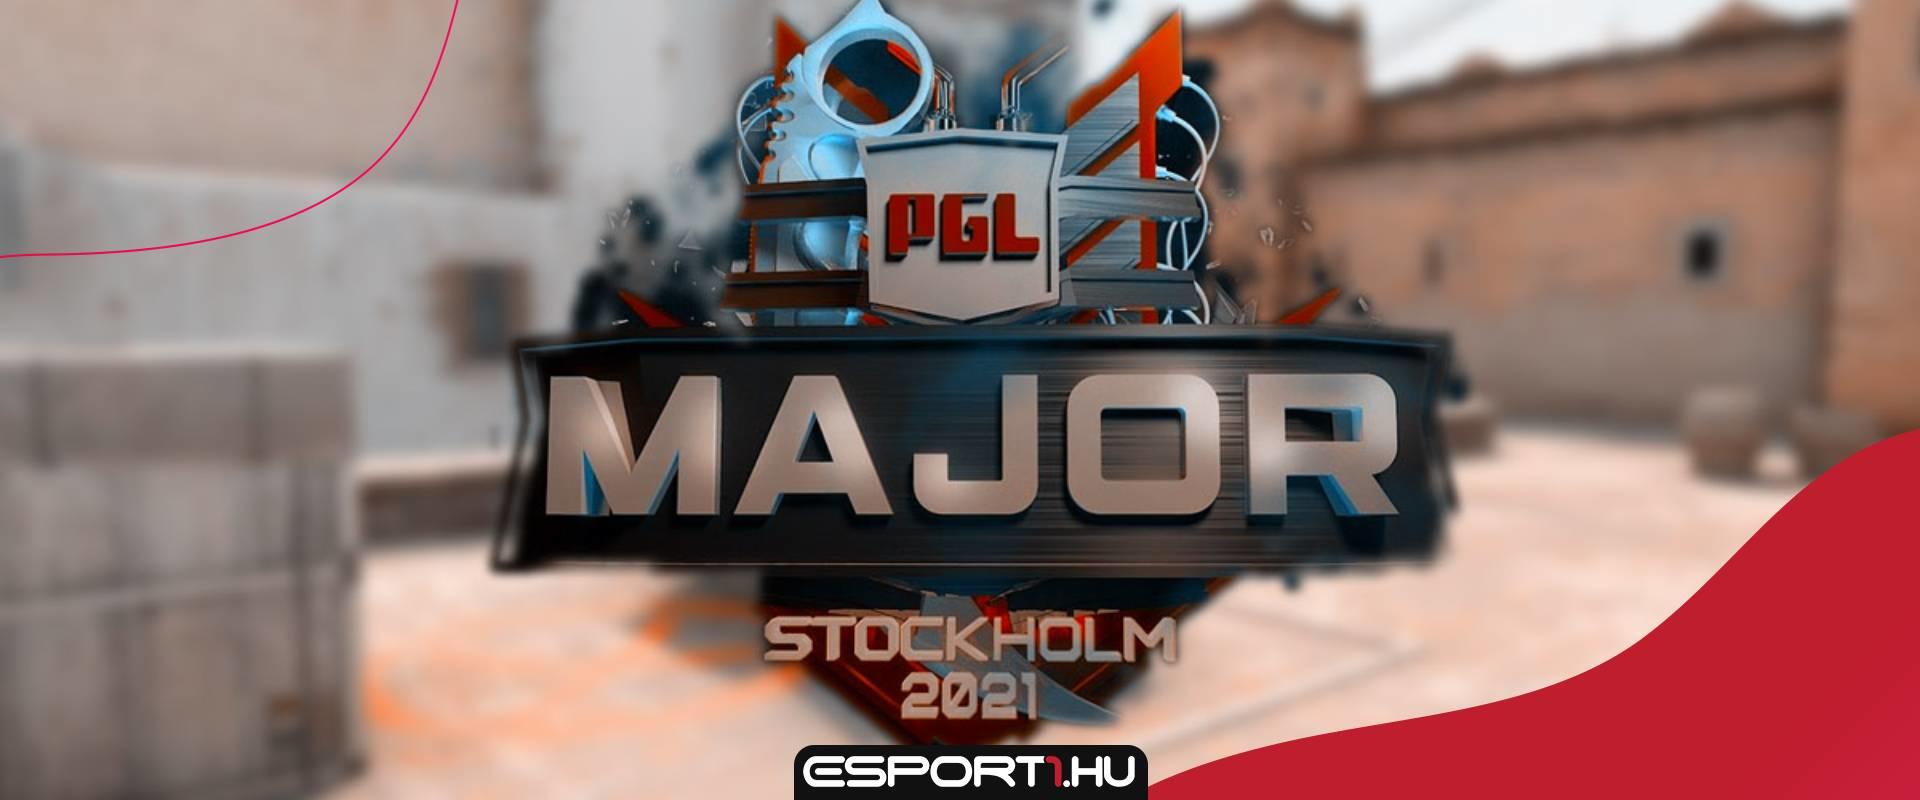 Legkésőbb péntekig kiderül a stockholmi PGL Major sorsa!